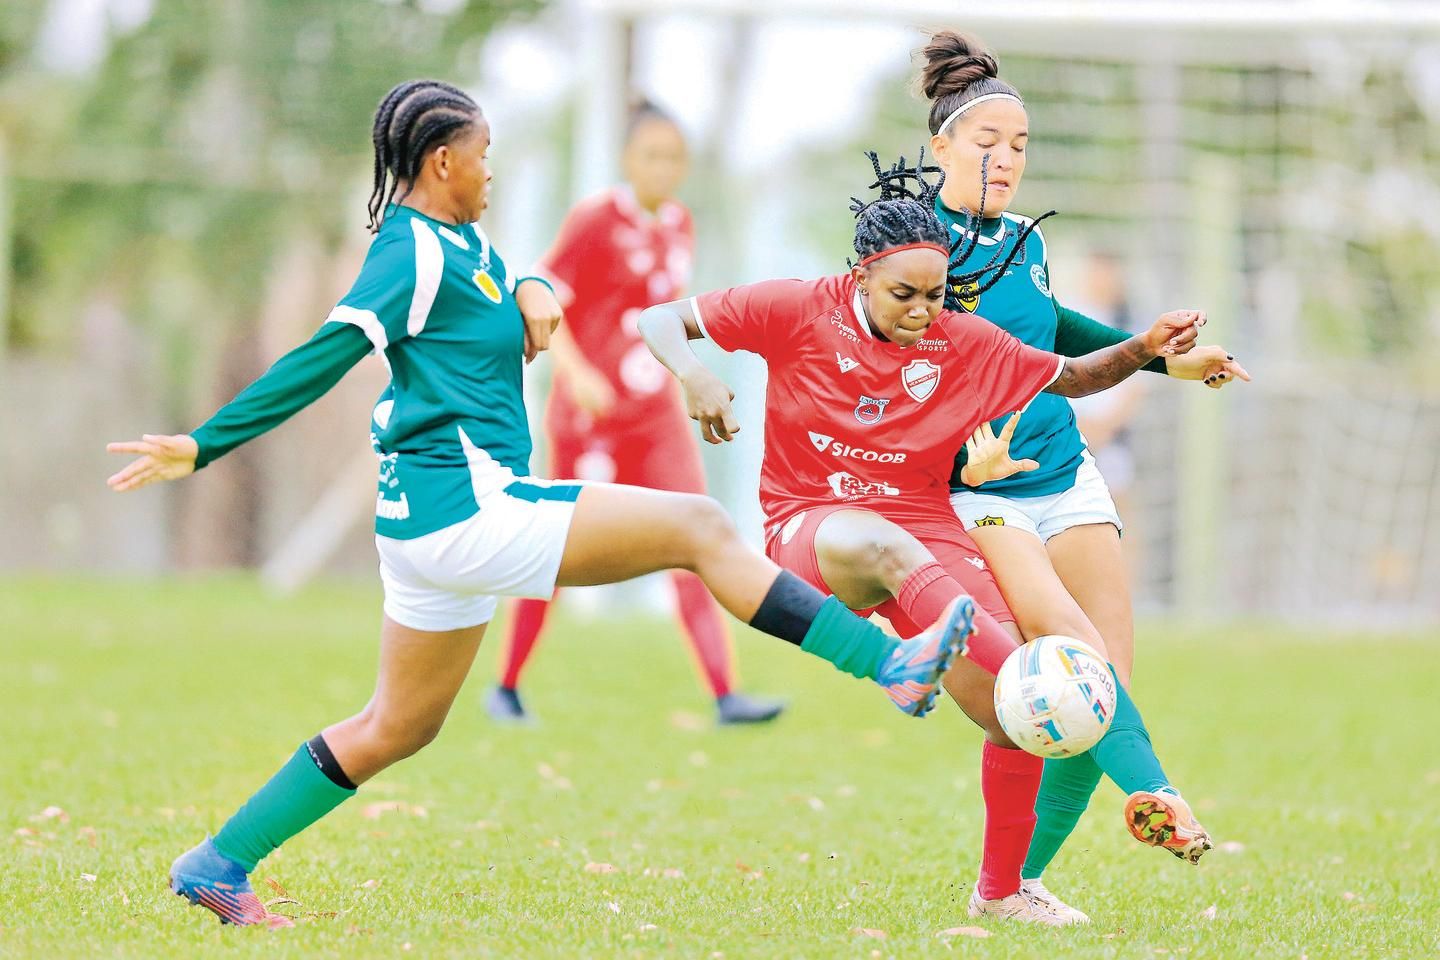 Rafaelle destaca jogo decisivo contra a Jamaica: “Agora é tudo ou